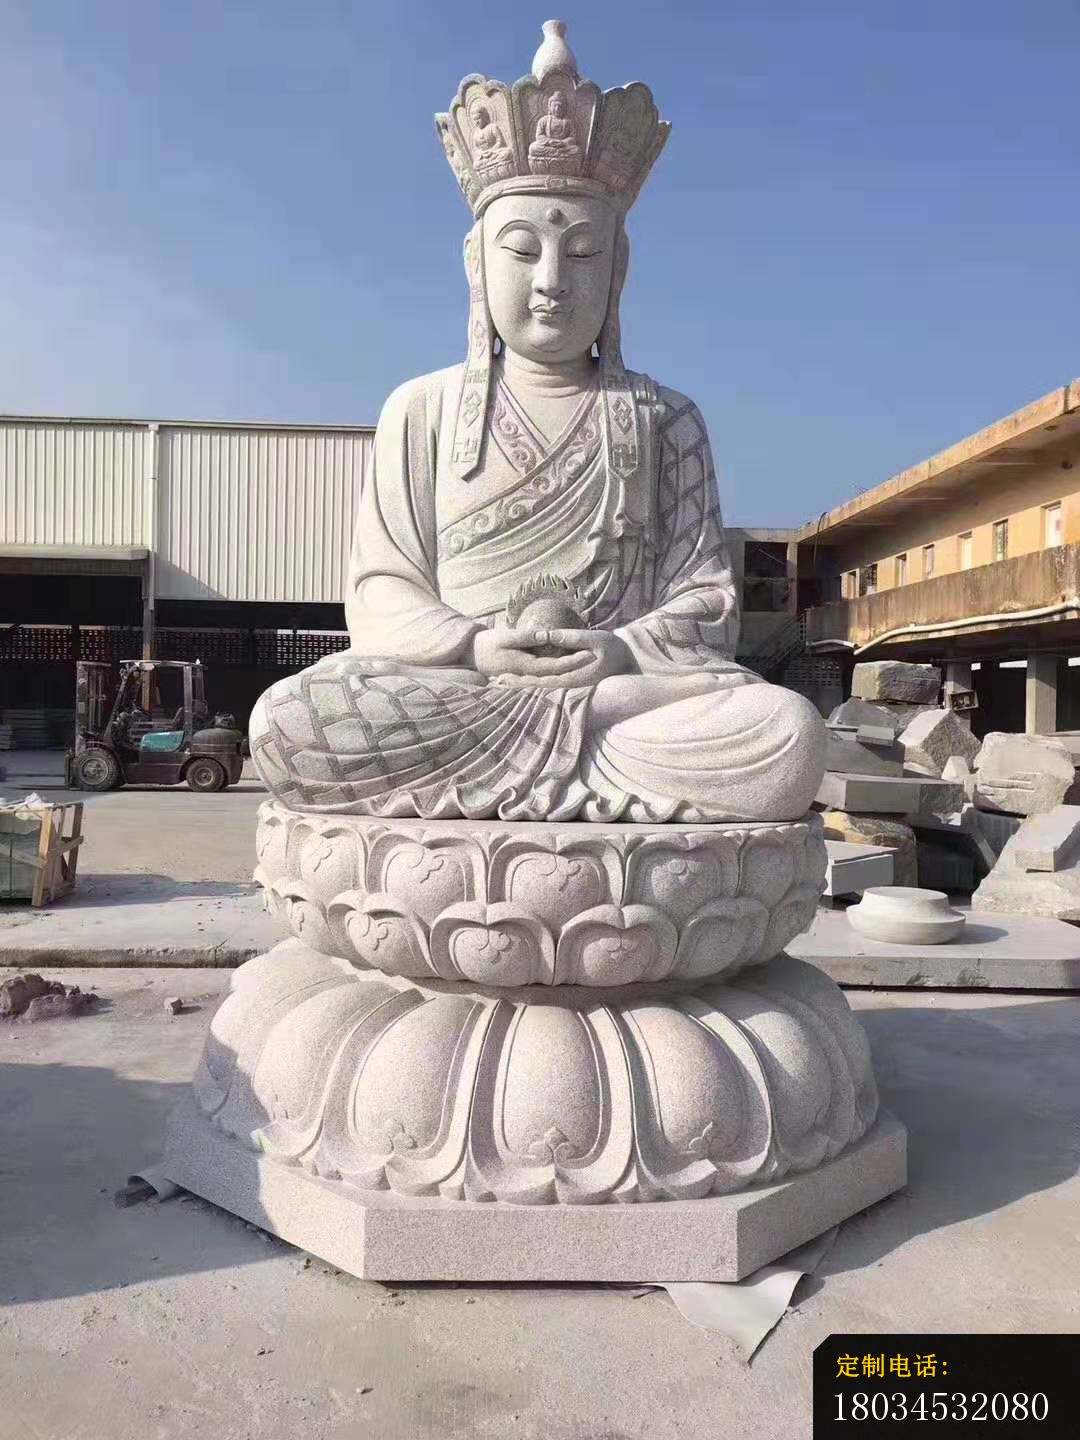 地藏王石雕佛像摆件寺庙景观雕塑 (1)_1080*1440